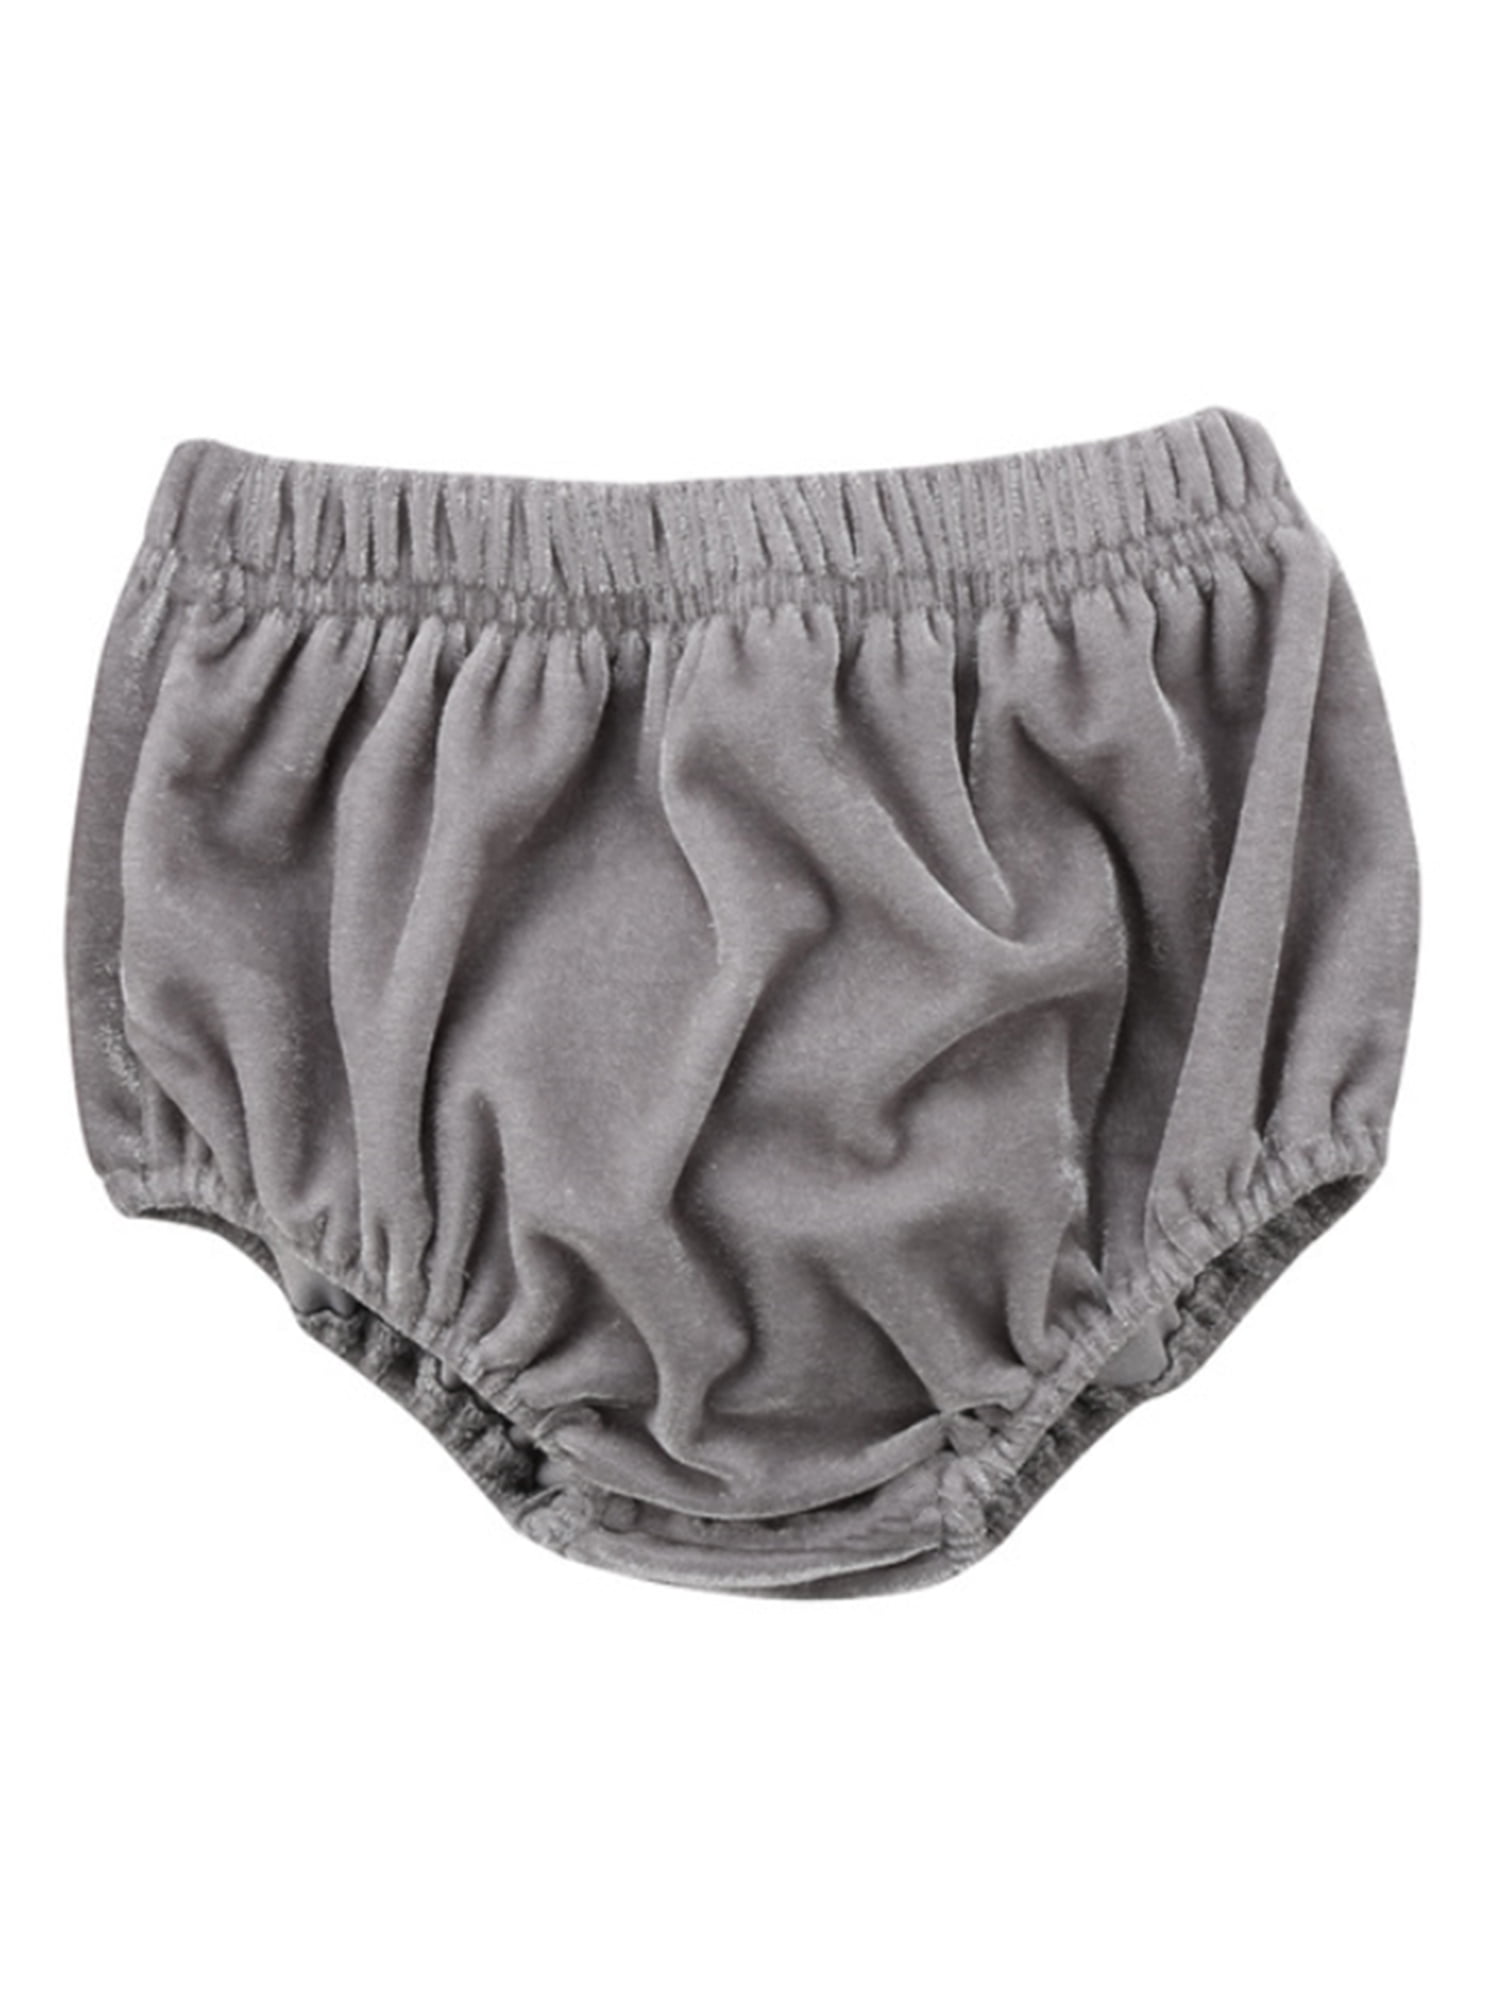 stylesilove Infant Baby Girl Velvet Bloomer Shorts (80/6-12 Months